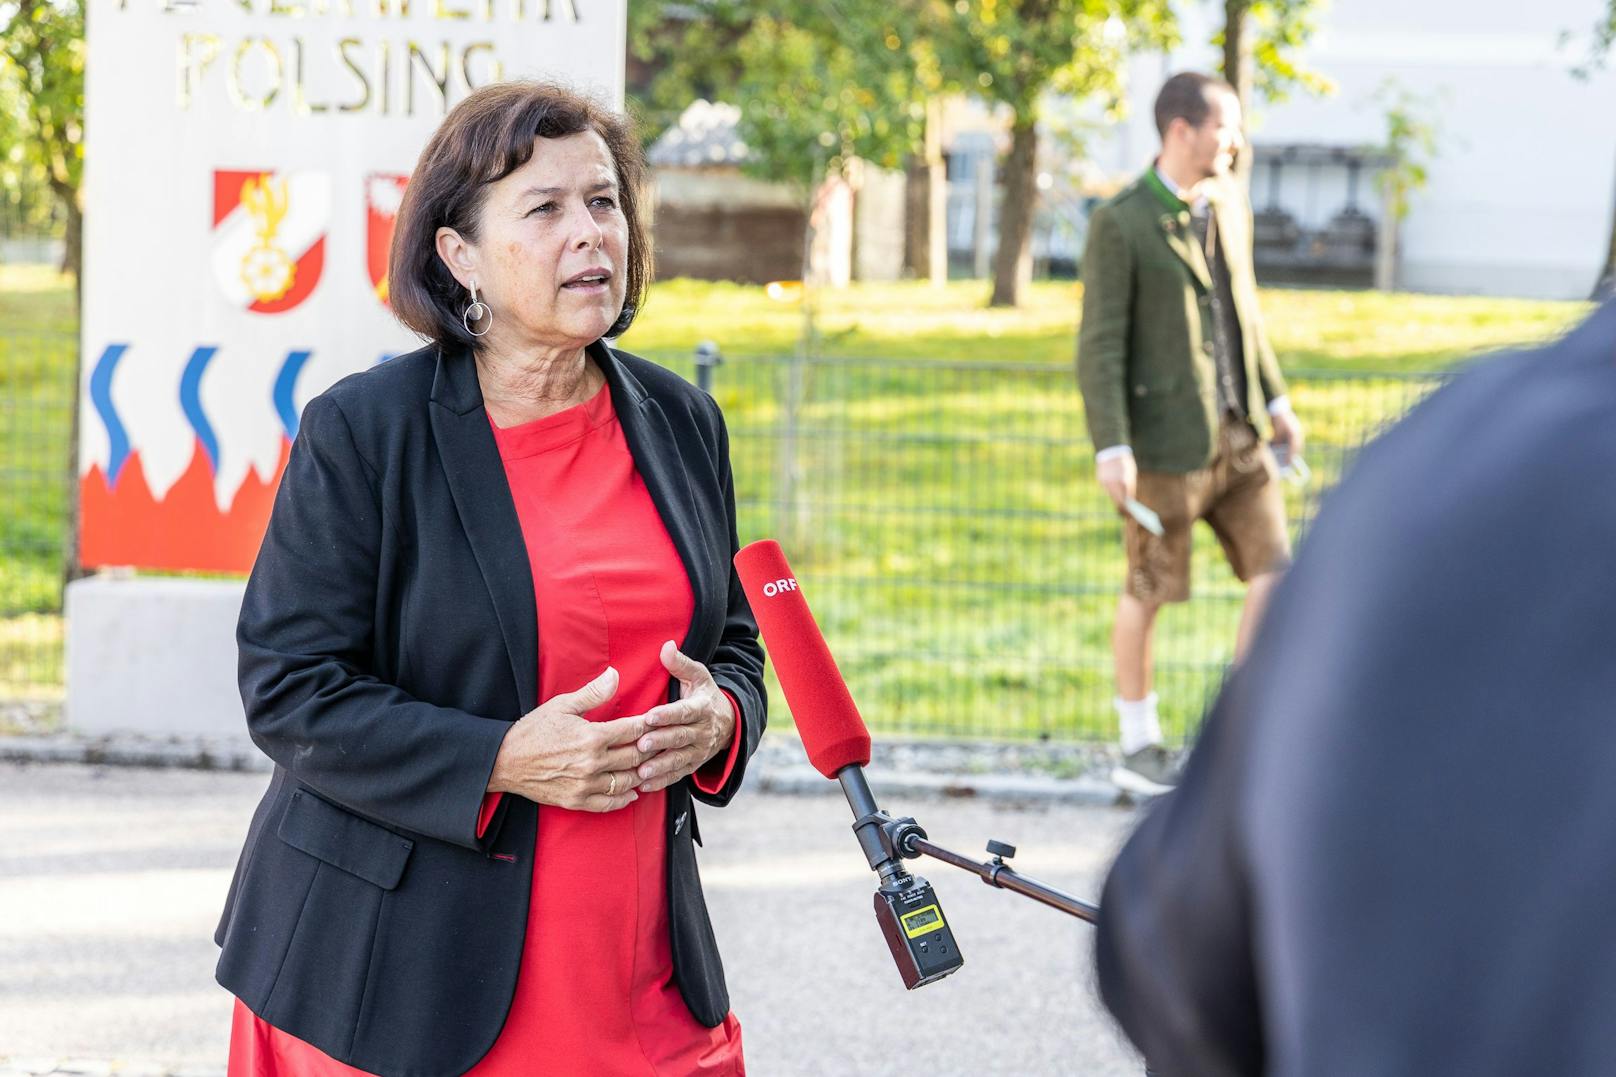 SPÖ-Spitzenkandidatin Birgit Gerstorfer vor ihrer Stimmabgabe zur Landtagswahl in Oberösterreich, am Sonntag 26. September 2021 in Alkoven.